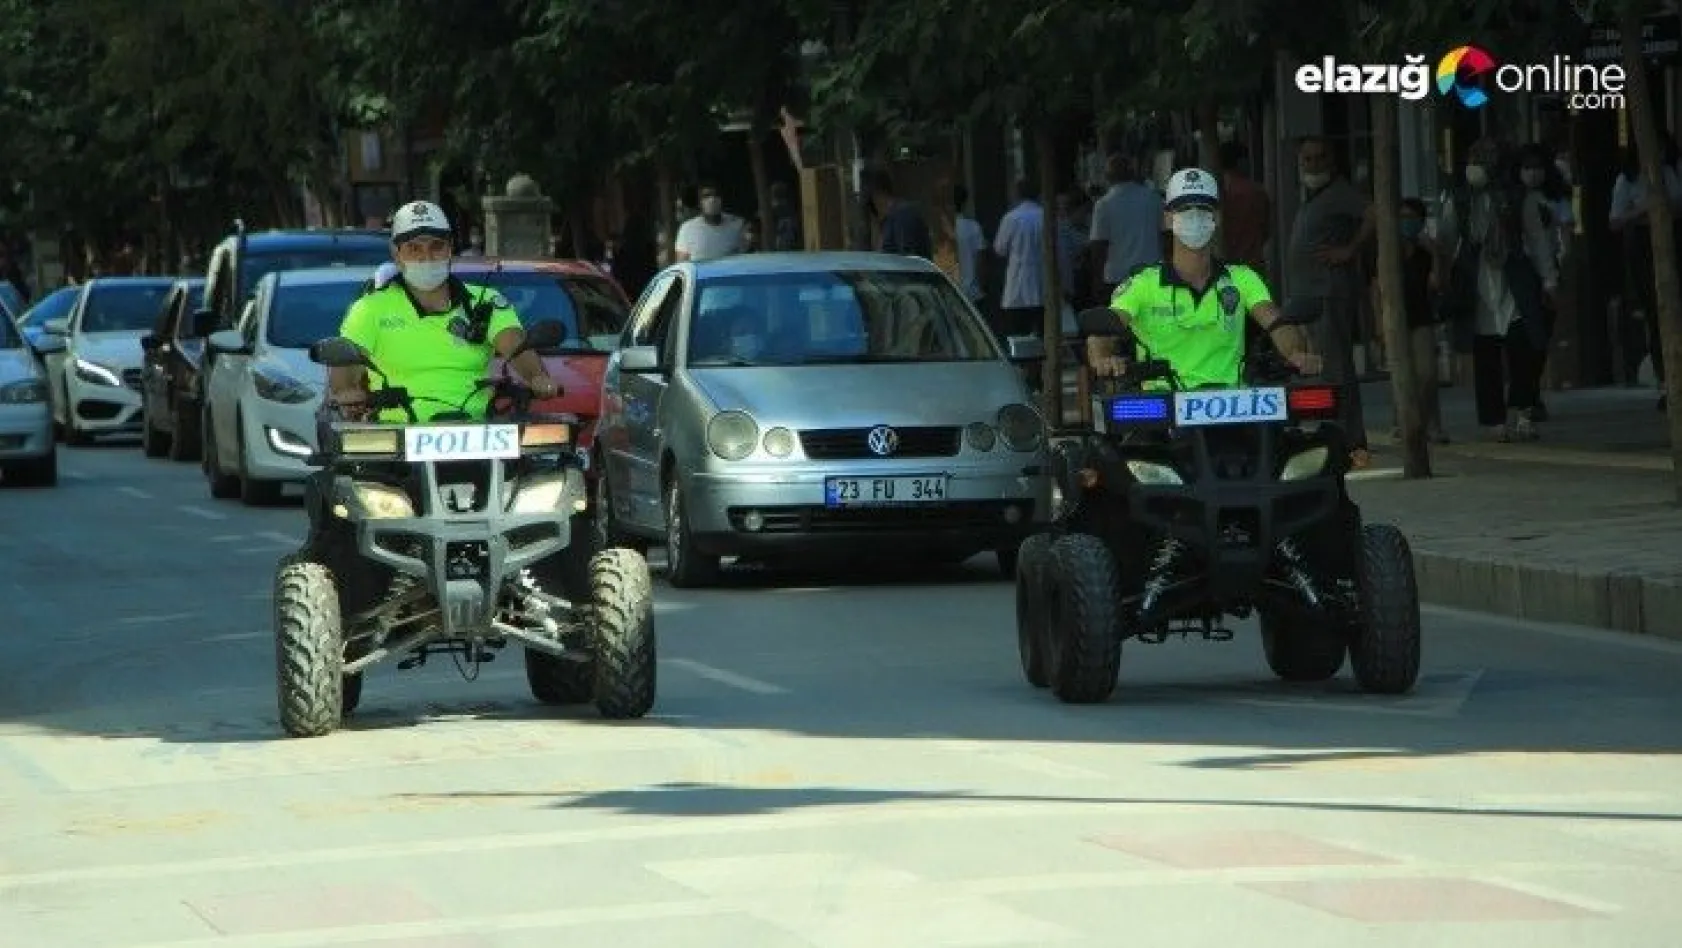 Elazığ'da polisler, ATV motorlu denetime başladı